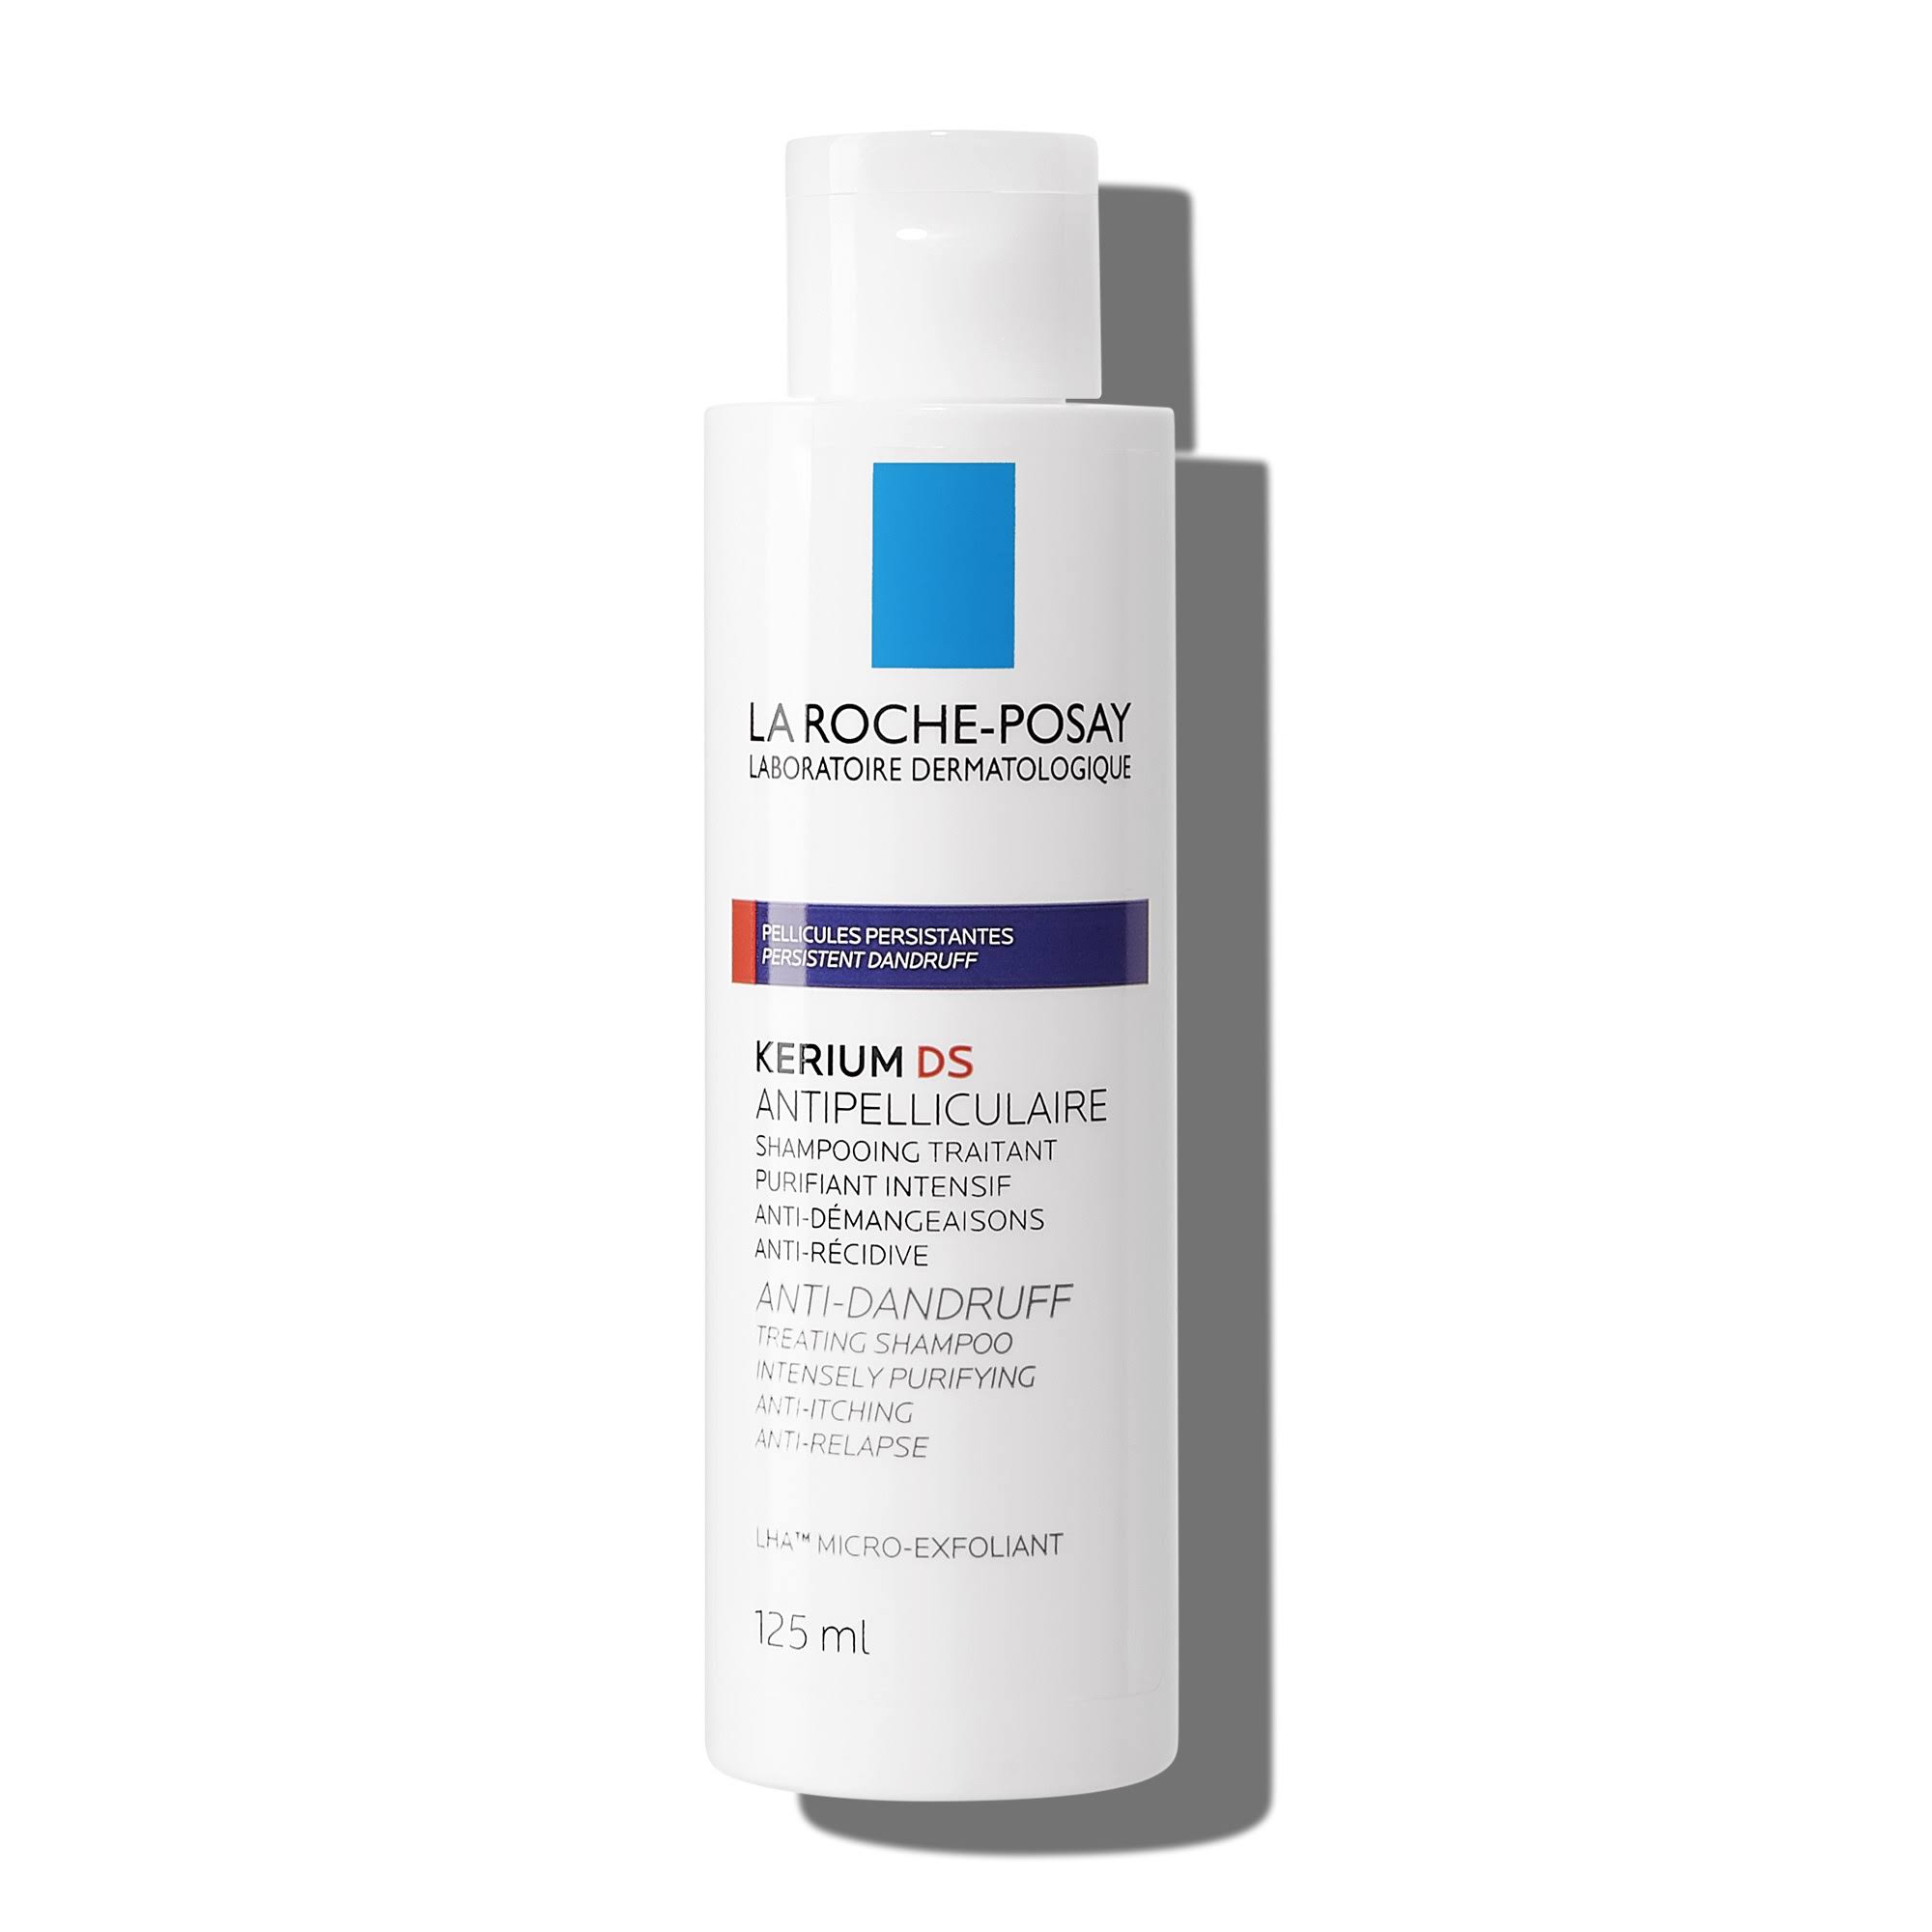 La Roche Posay Kerium DS Anti-Dandruff Intensive Shampoo 125ml